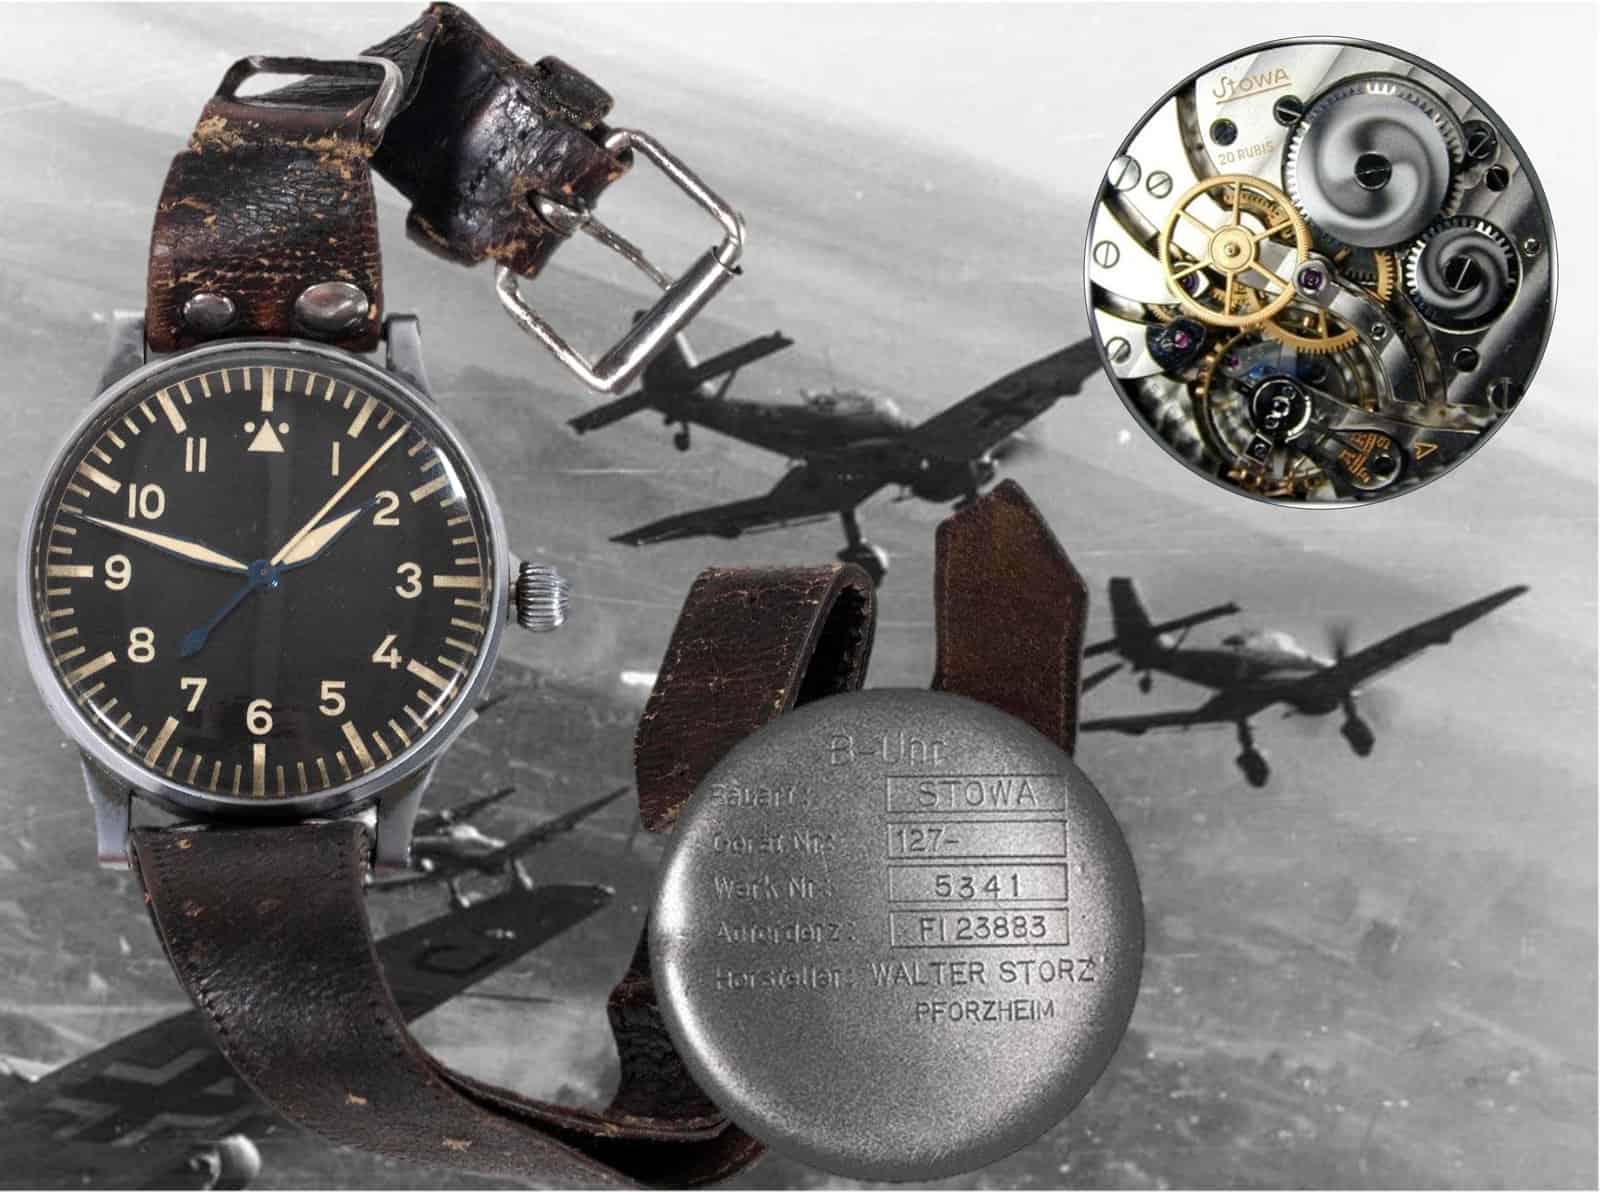 Walter Stotz (Stowa) Beobachtungs-Armbanduhr Fl. 23883 Baumuster A 